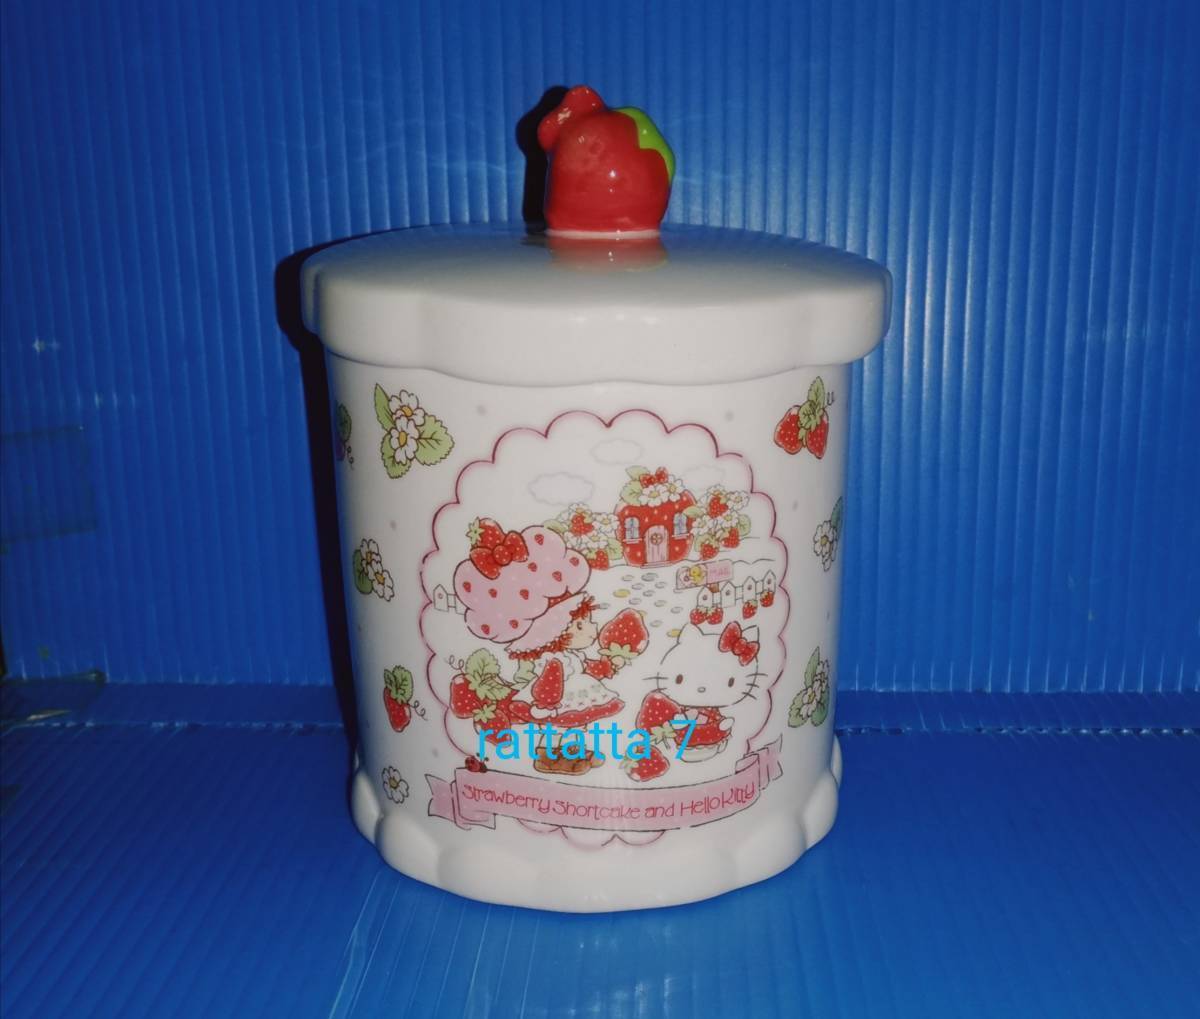 Sanrio Hello Kitty Strawberry Shortcake Collaboration Ceramic Box Rare g44